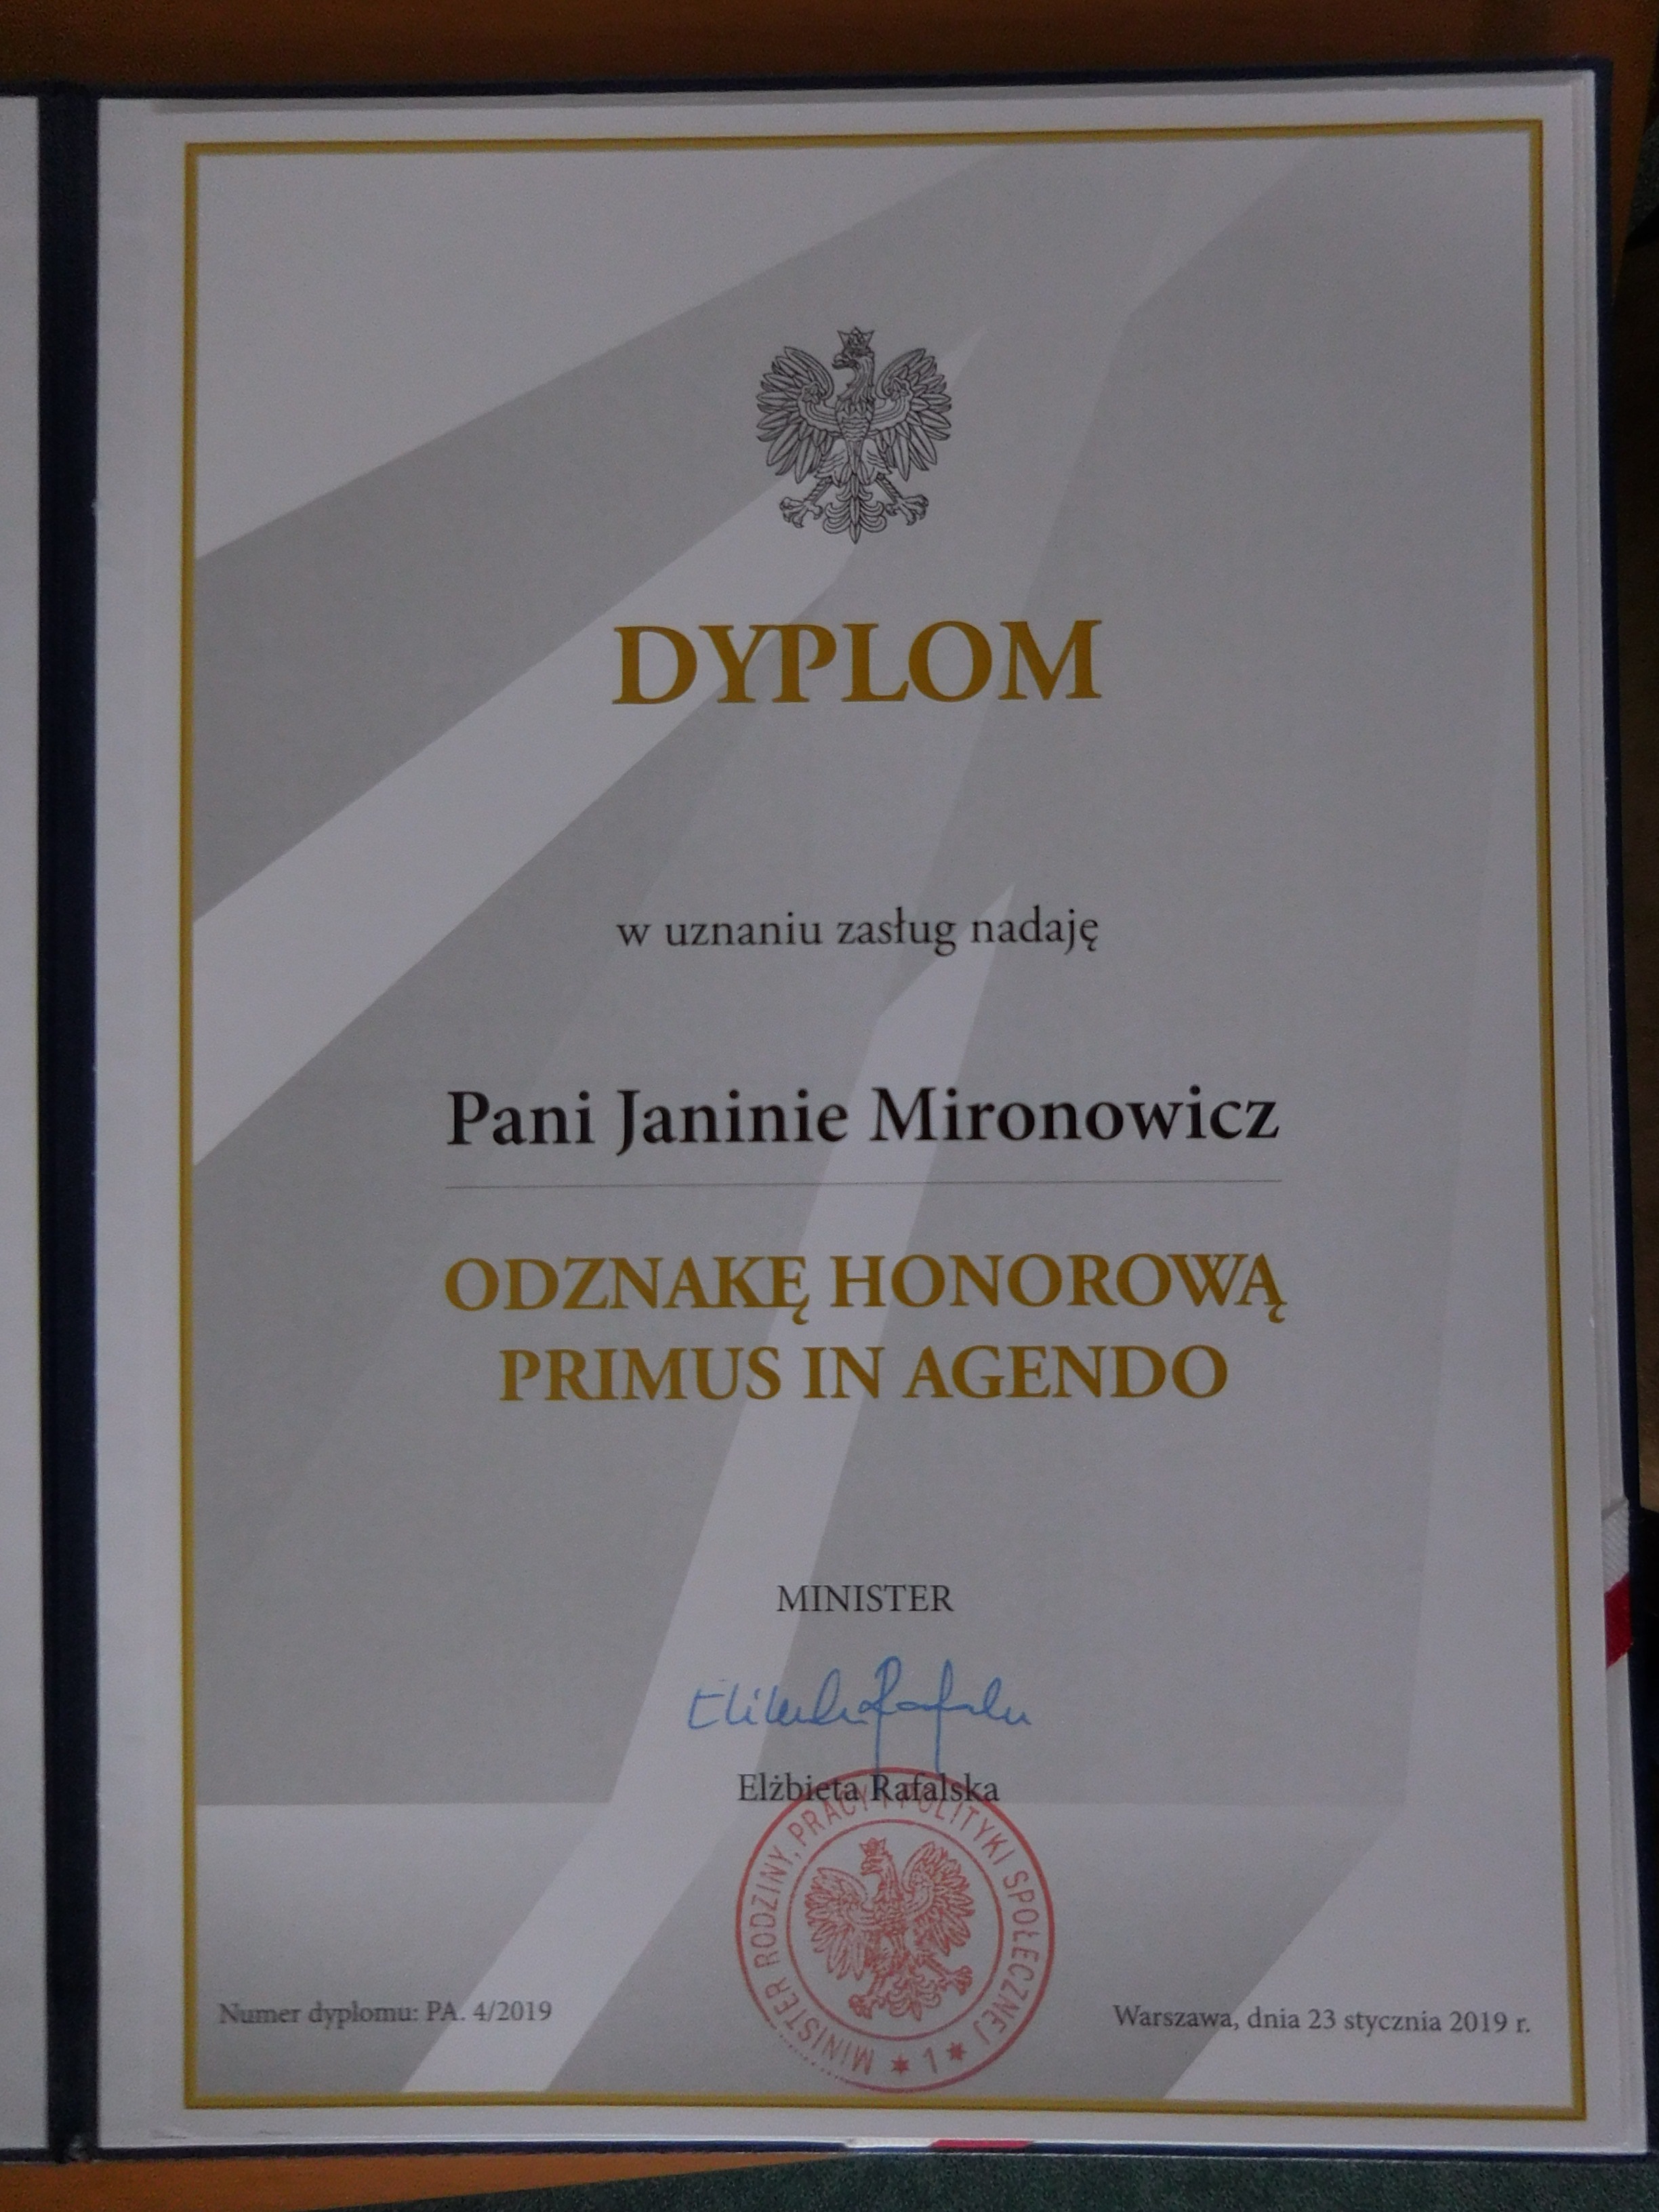 Pani Janina Mironowicz, Dyrektor WUP w Białymstoku, 23 stycznia 2019 r. została uhonorowana, przez Panią Elżbietę Rafalską, Minister Rodziny, Pracy i Polityki Społecznej, Odznaką Honorową Primus in Agendo – Pierwszy w Działaniu.